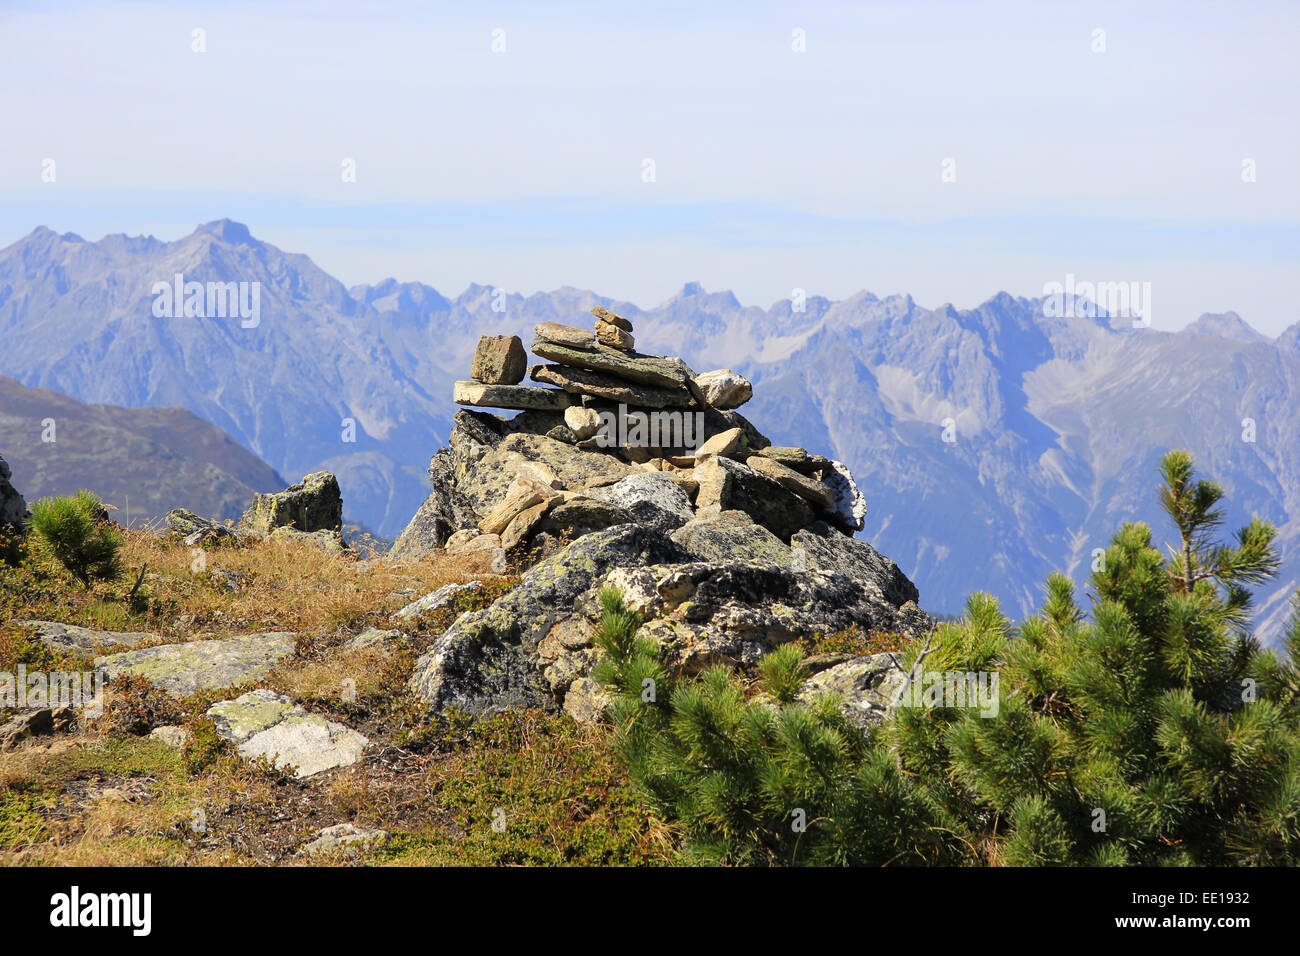 Österreich, Tirol, Pitztal, Steinmännchen im Gebirge, herbstliche Berglandschaft Stock Photo